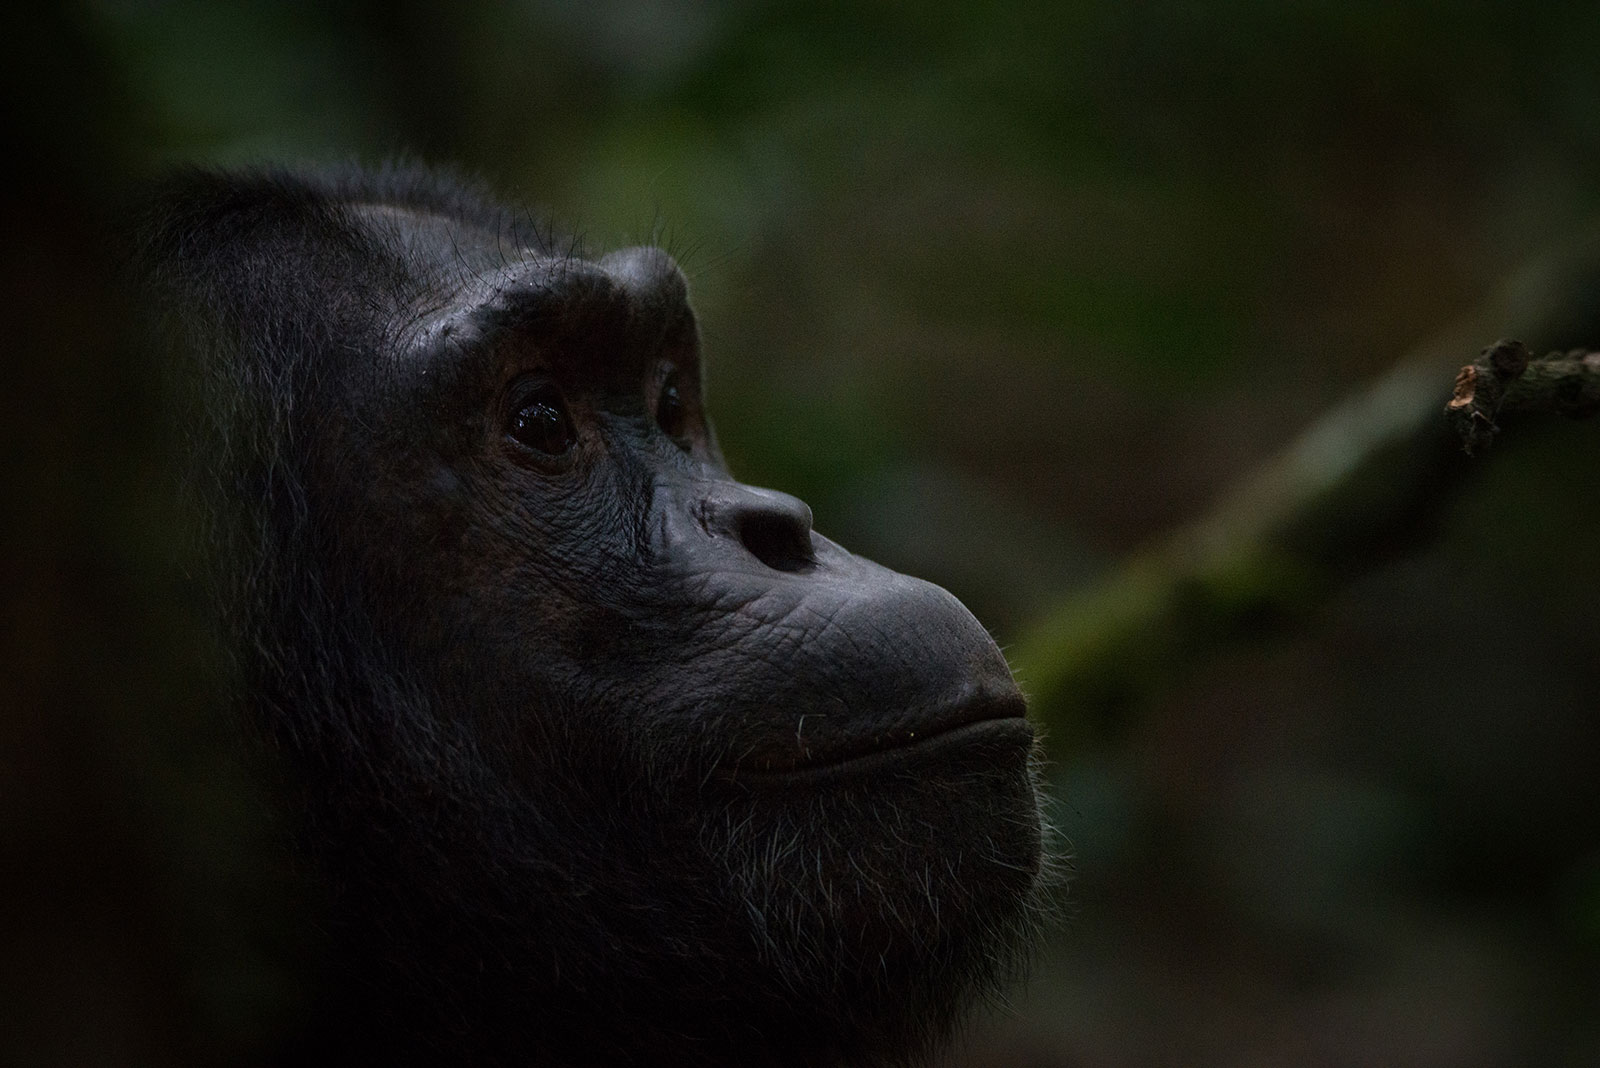 Chimpanzee in Jungle